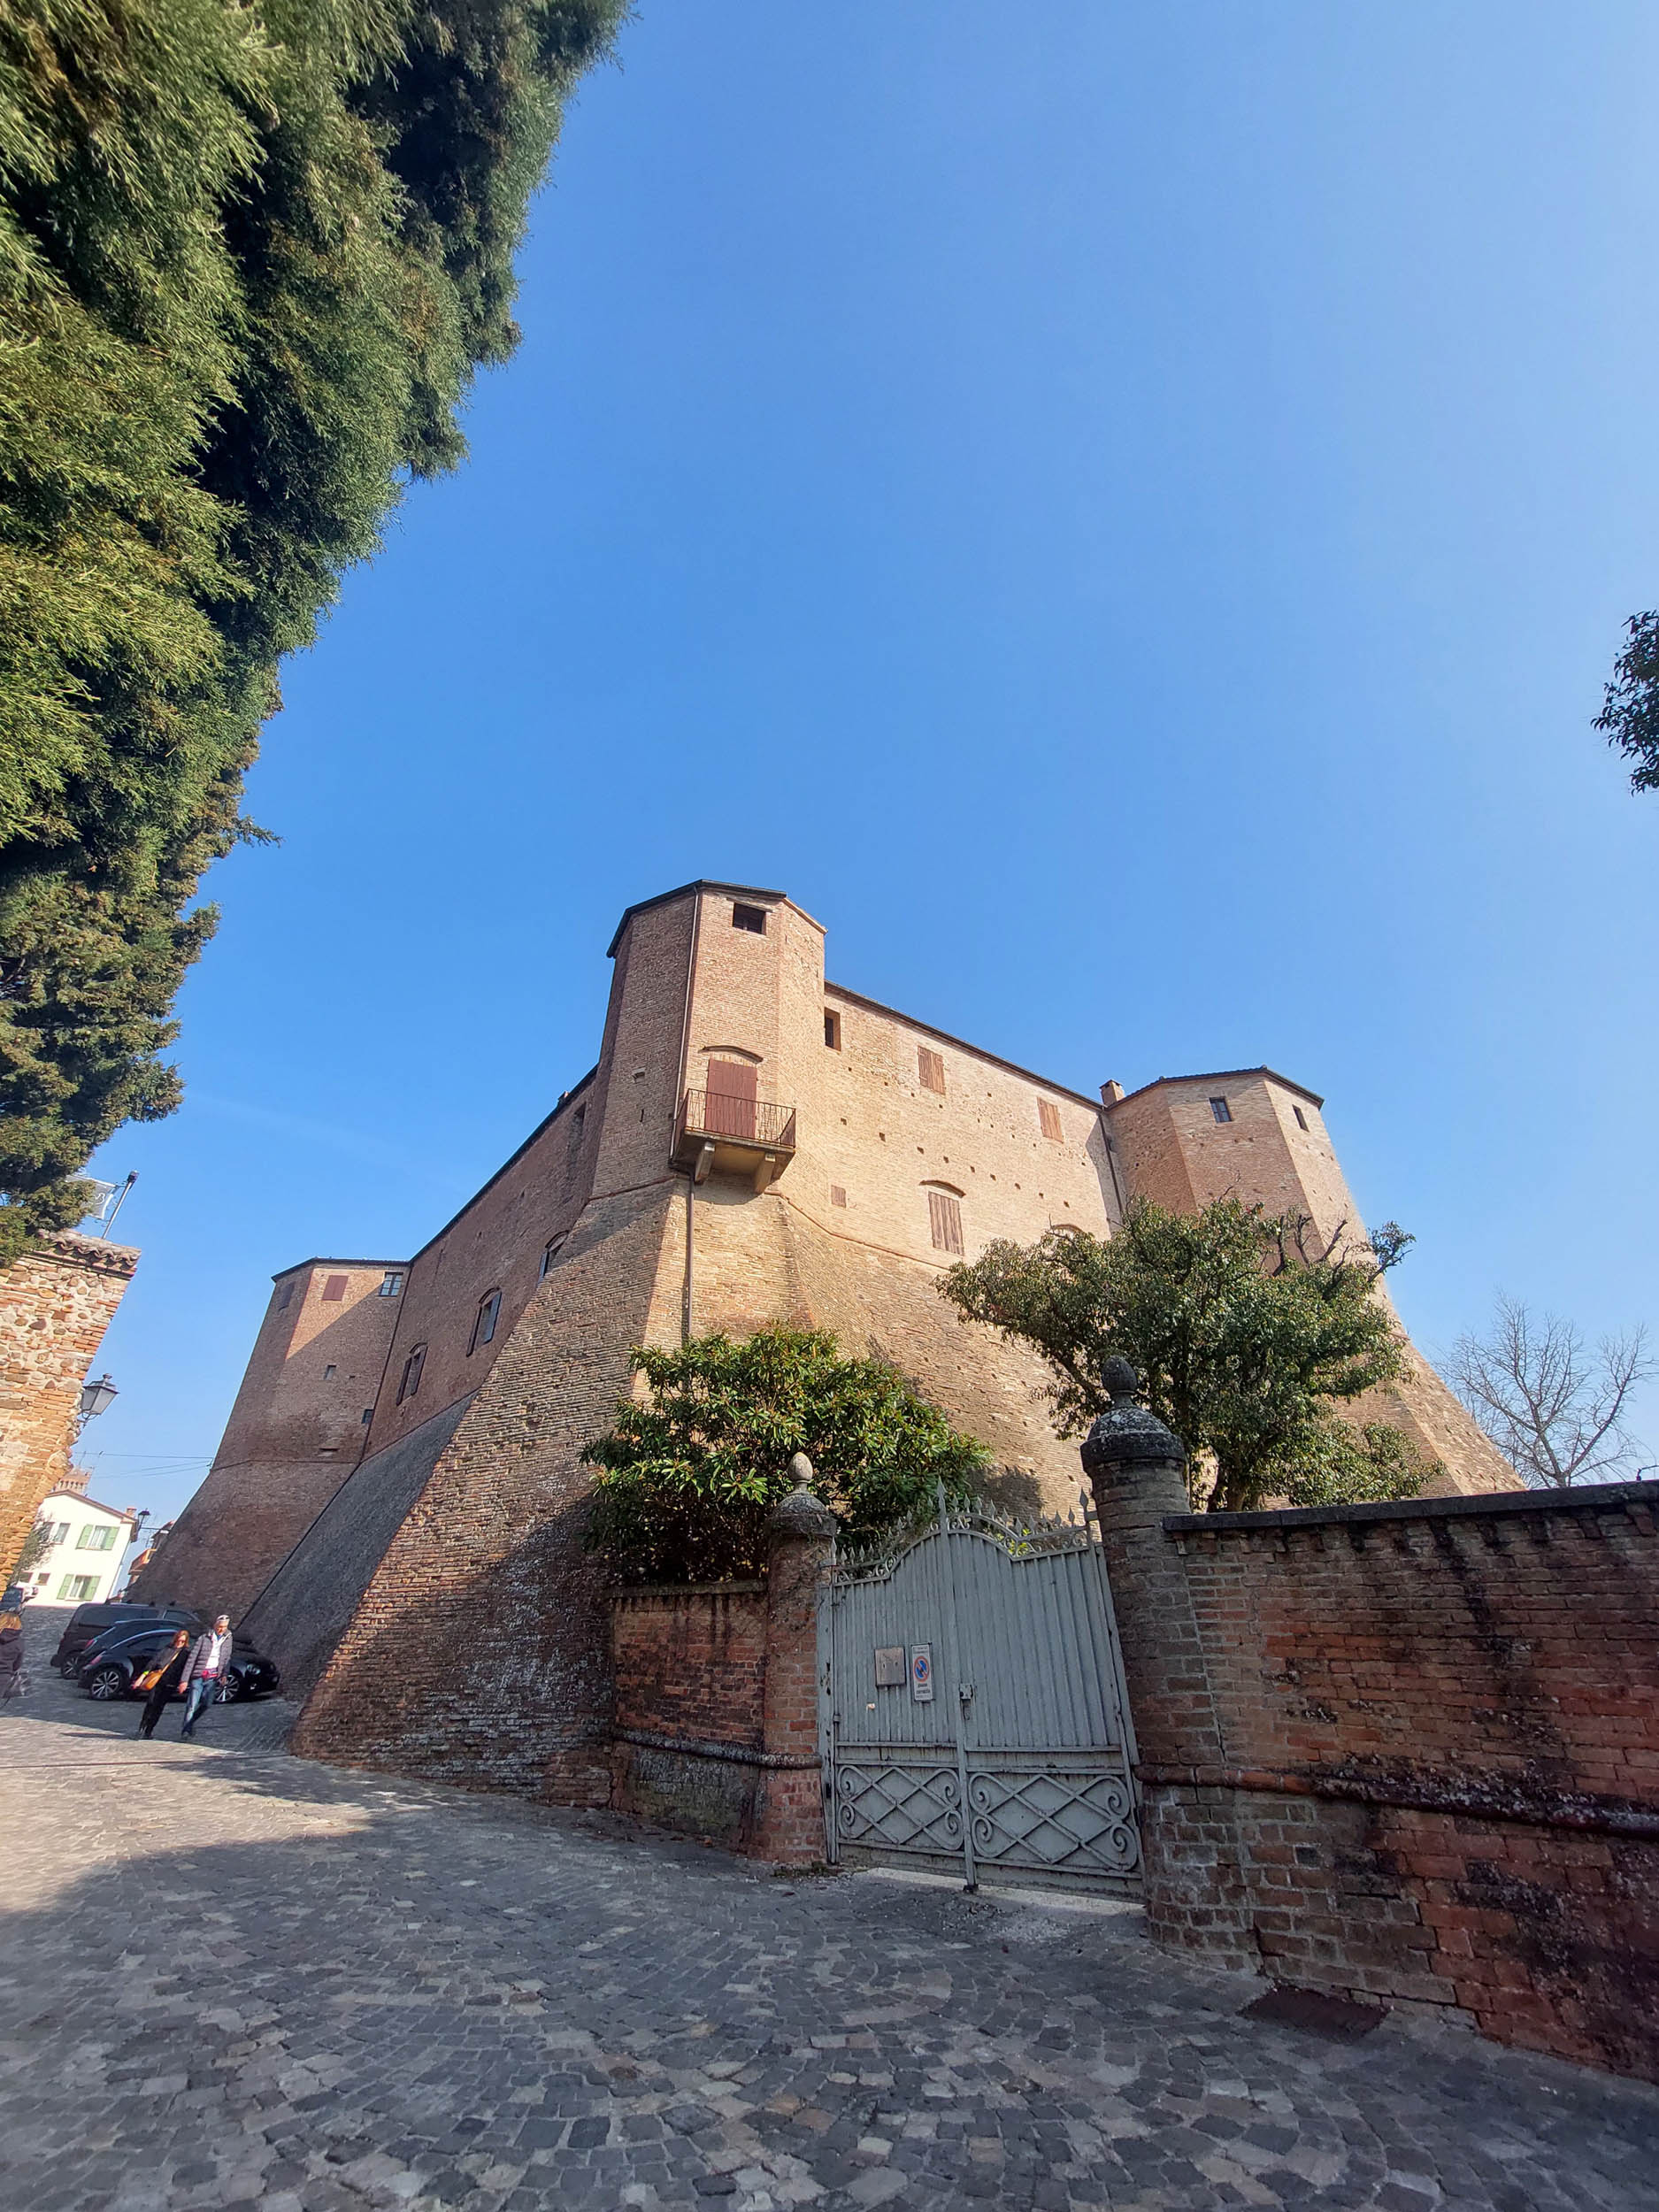 Rocca Malatestiana di Santarcangelo